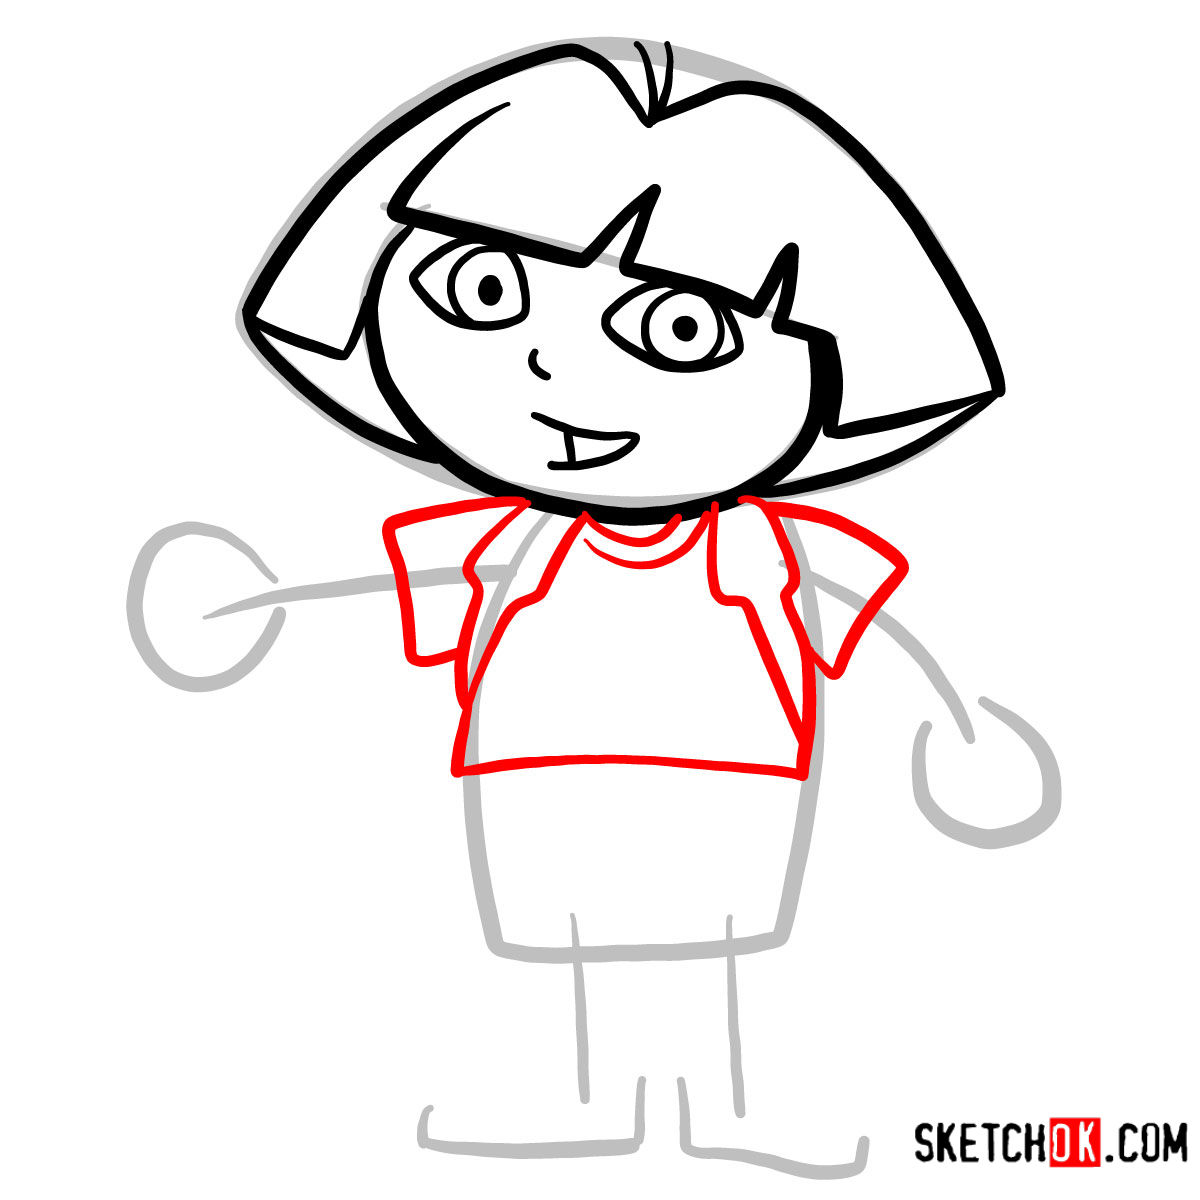 How to draw Dora the Explorer - step 05